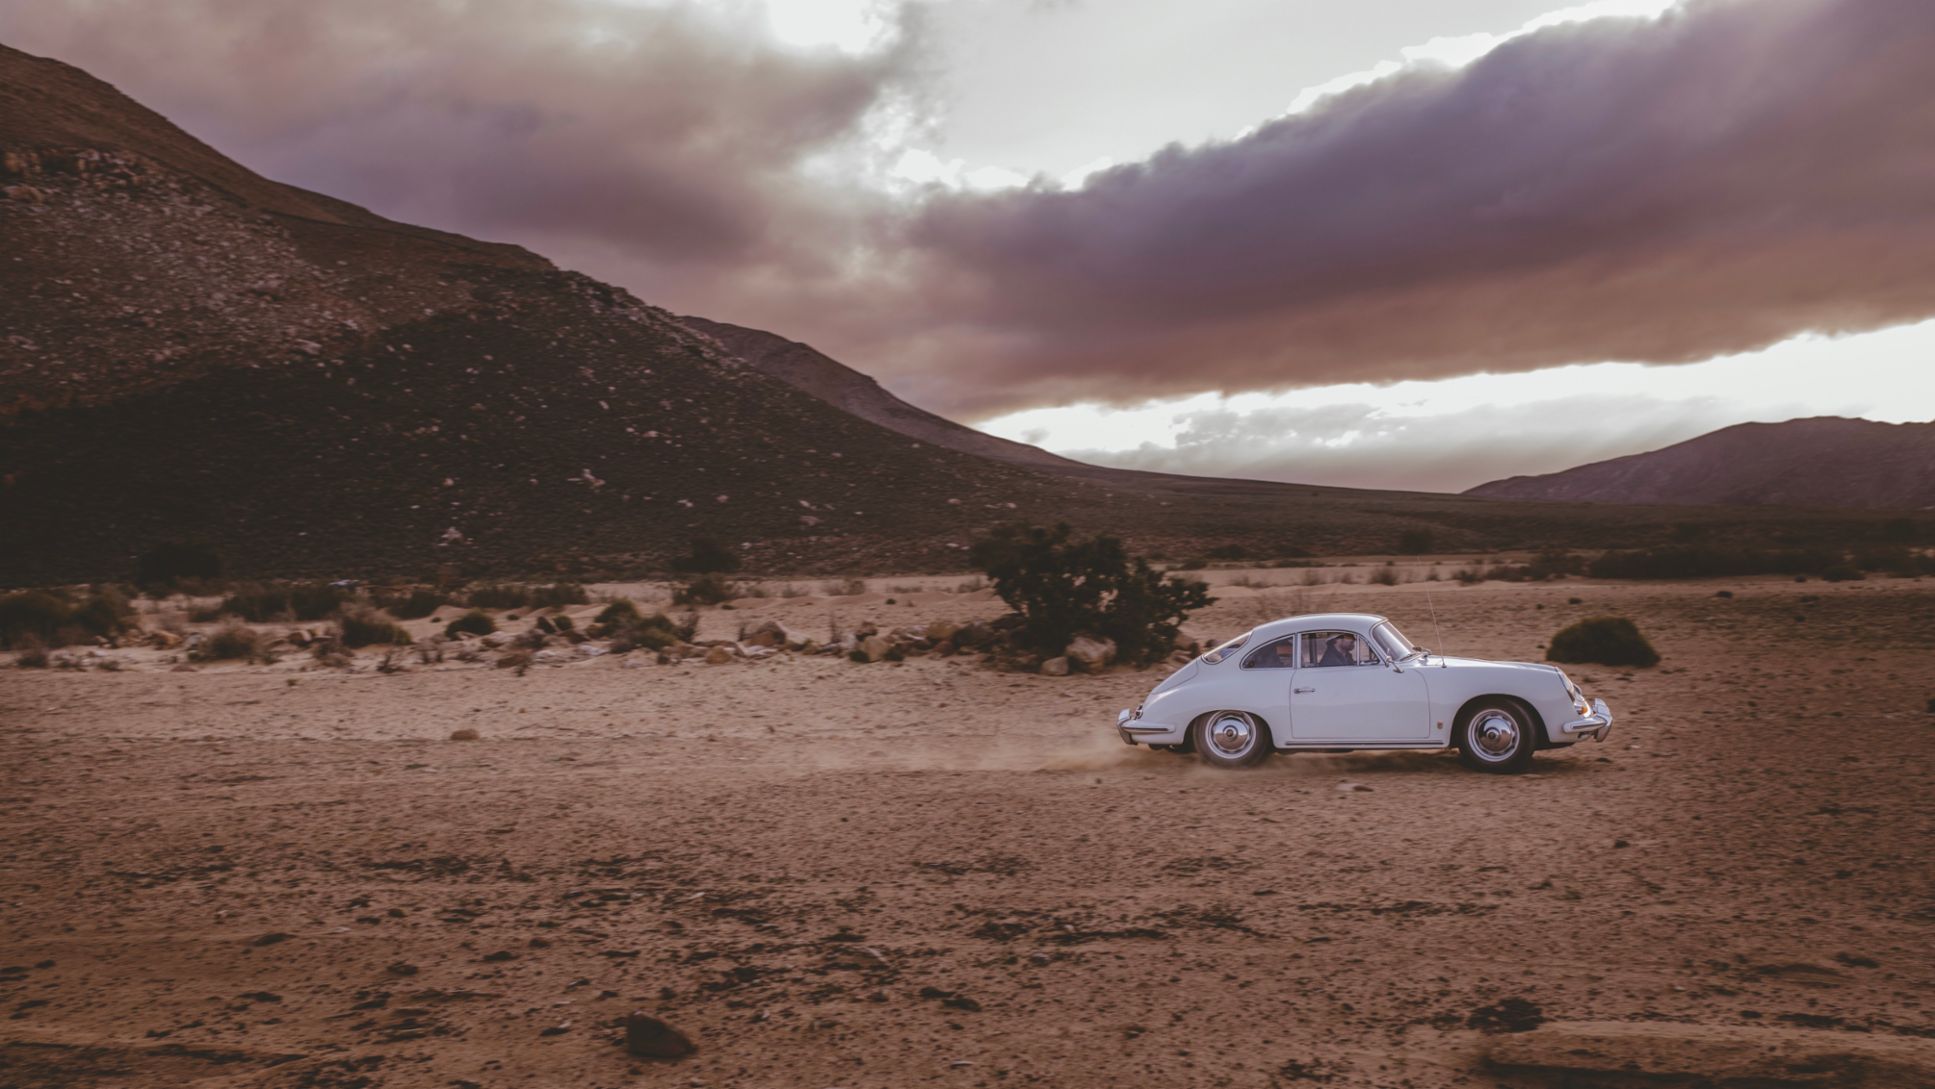 Into the wild – in a Porsche 356 - Image 1